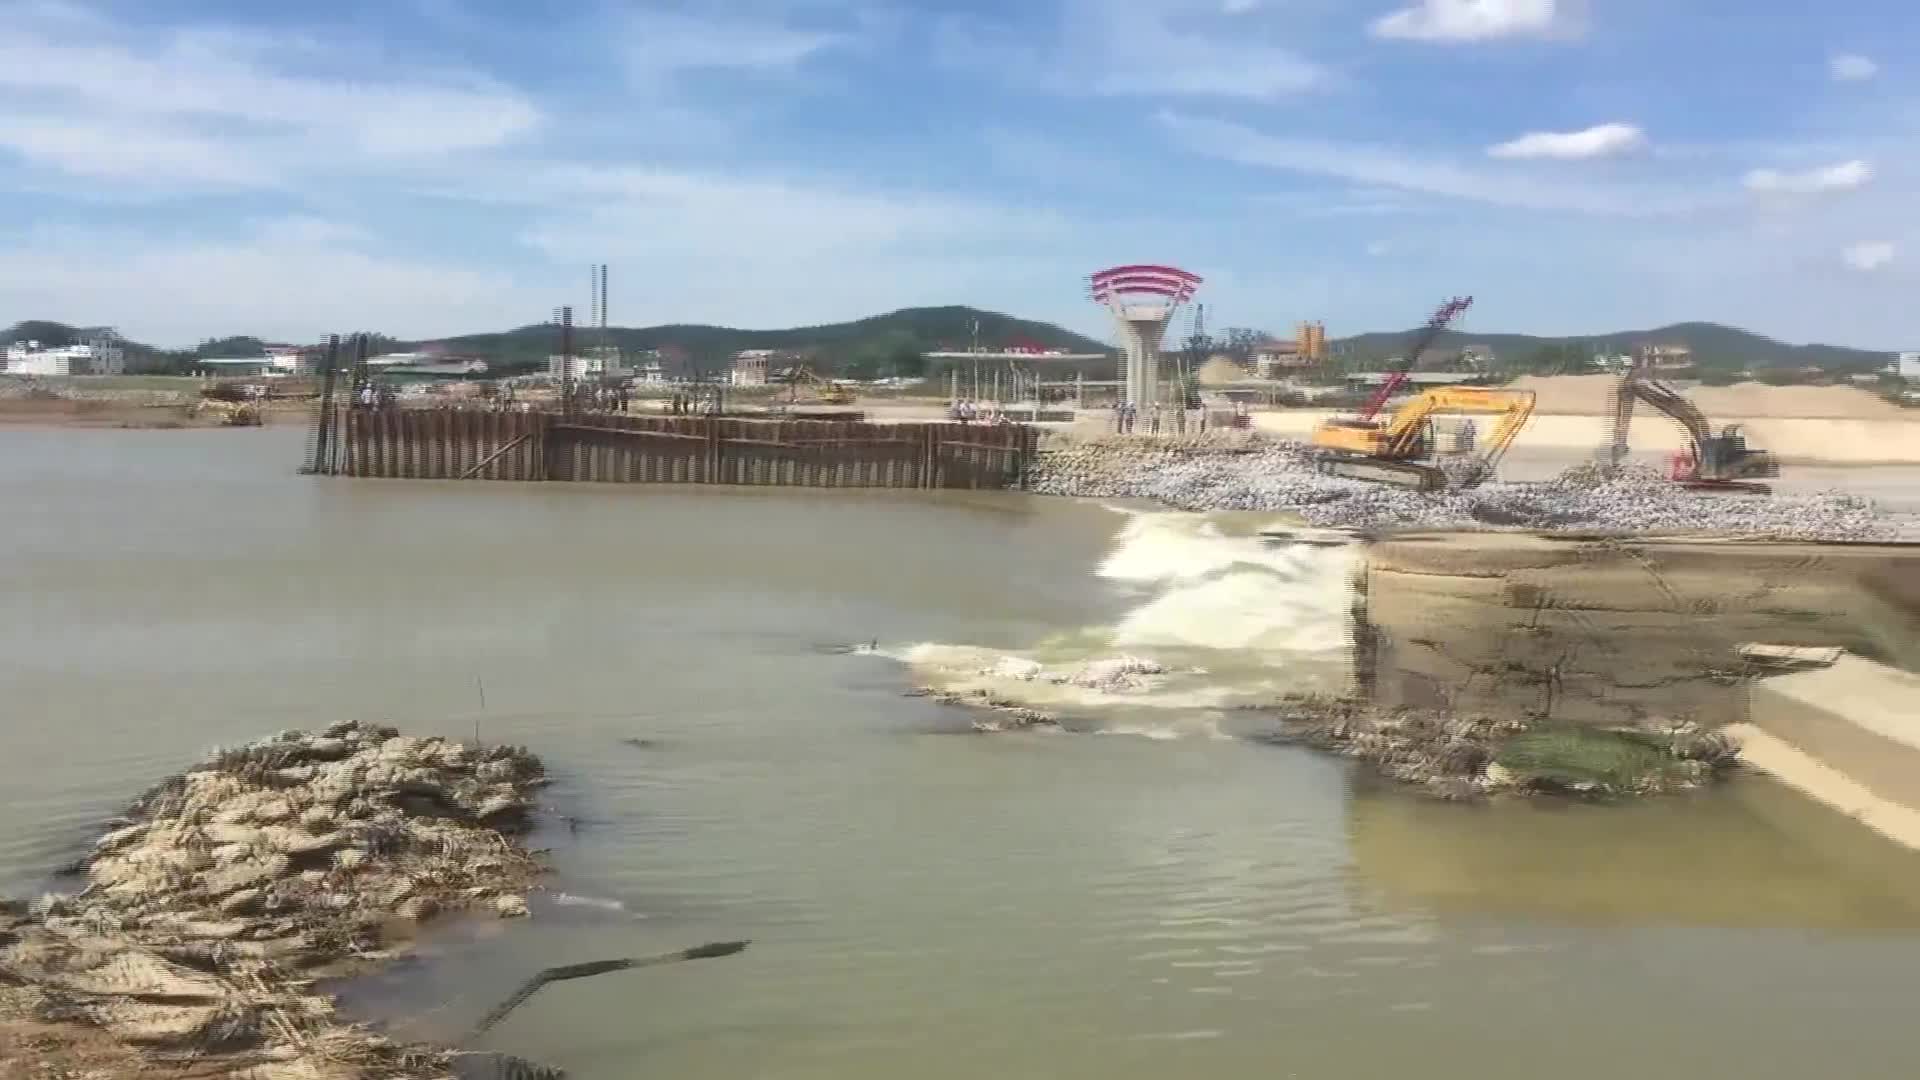 Vỡ đập tràn trên sông Lam